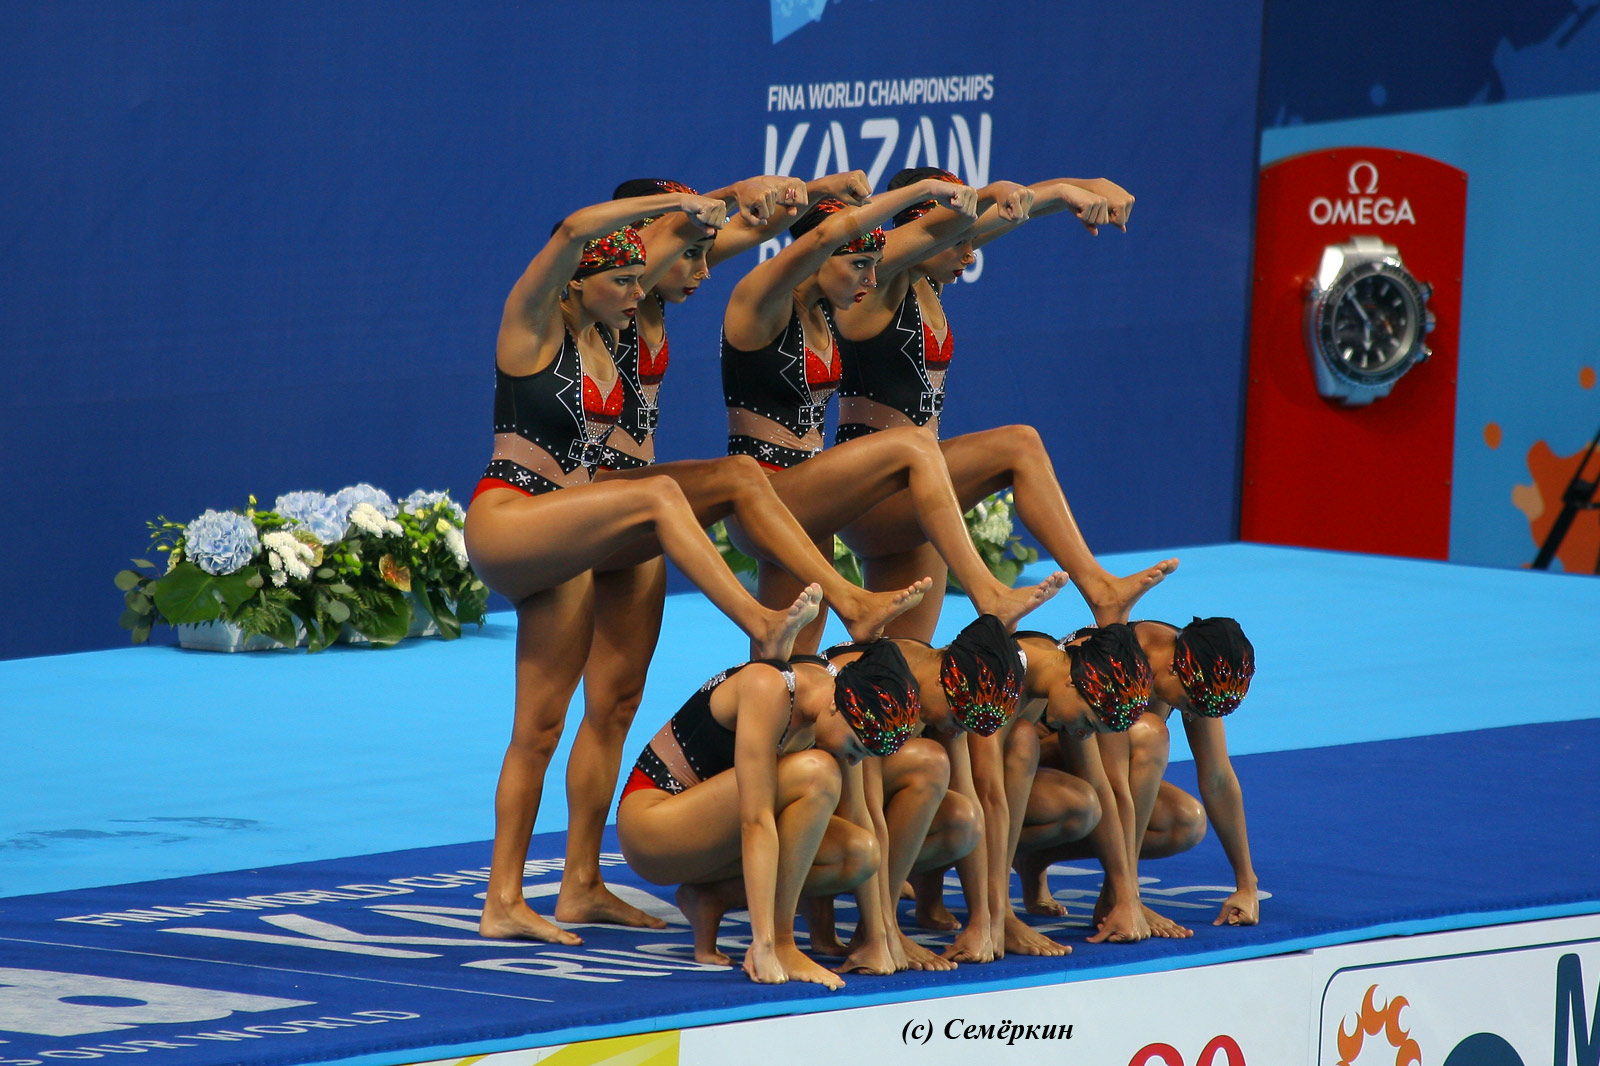 Сборная Бразилии - байкерши. Синхронное плавание. Чемпионат мира ФИНА по водным видам спорта 2015 года в Казани. 